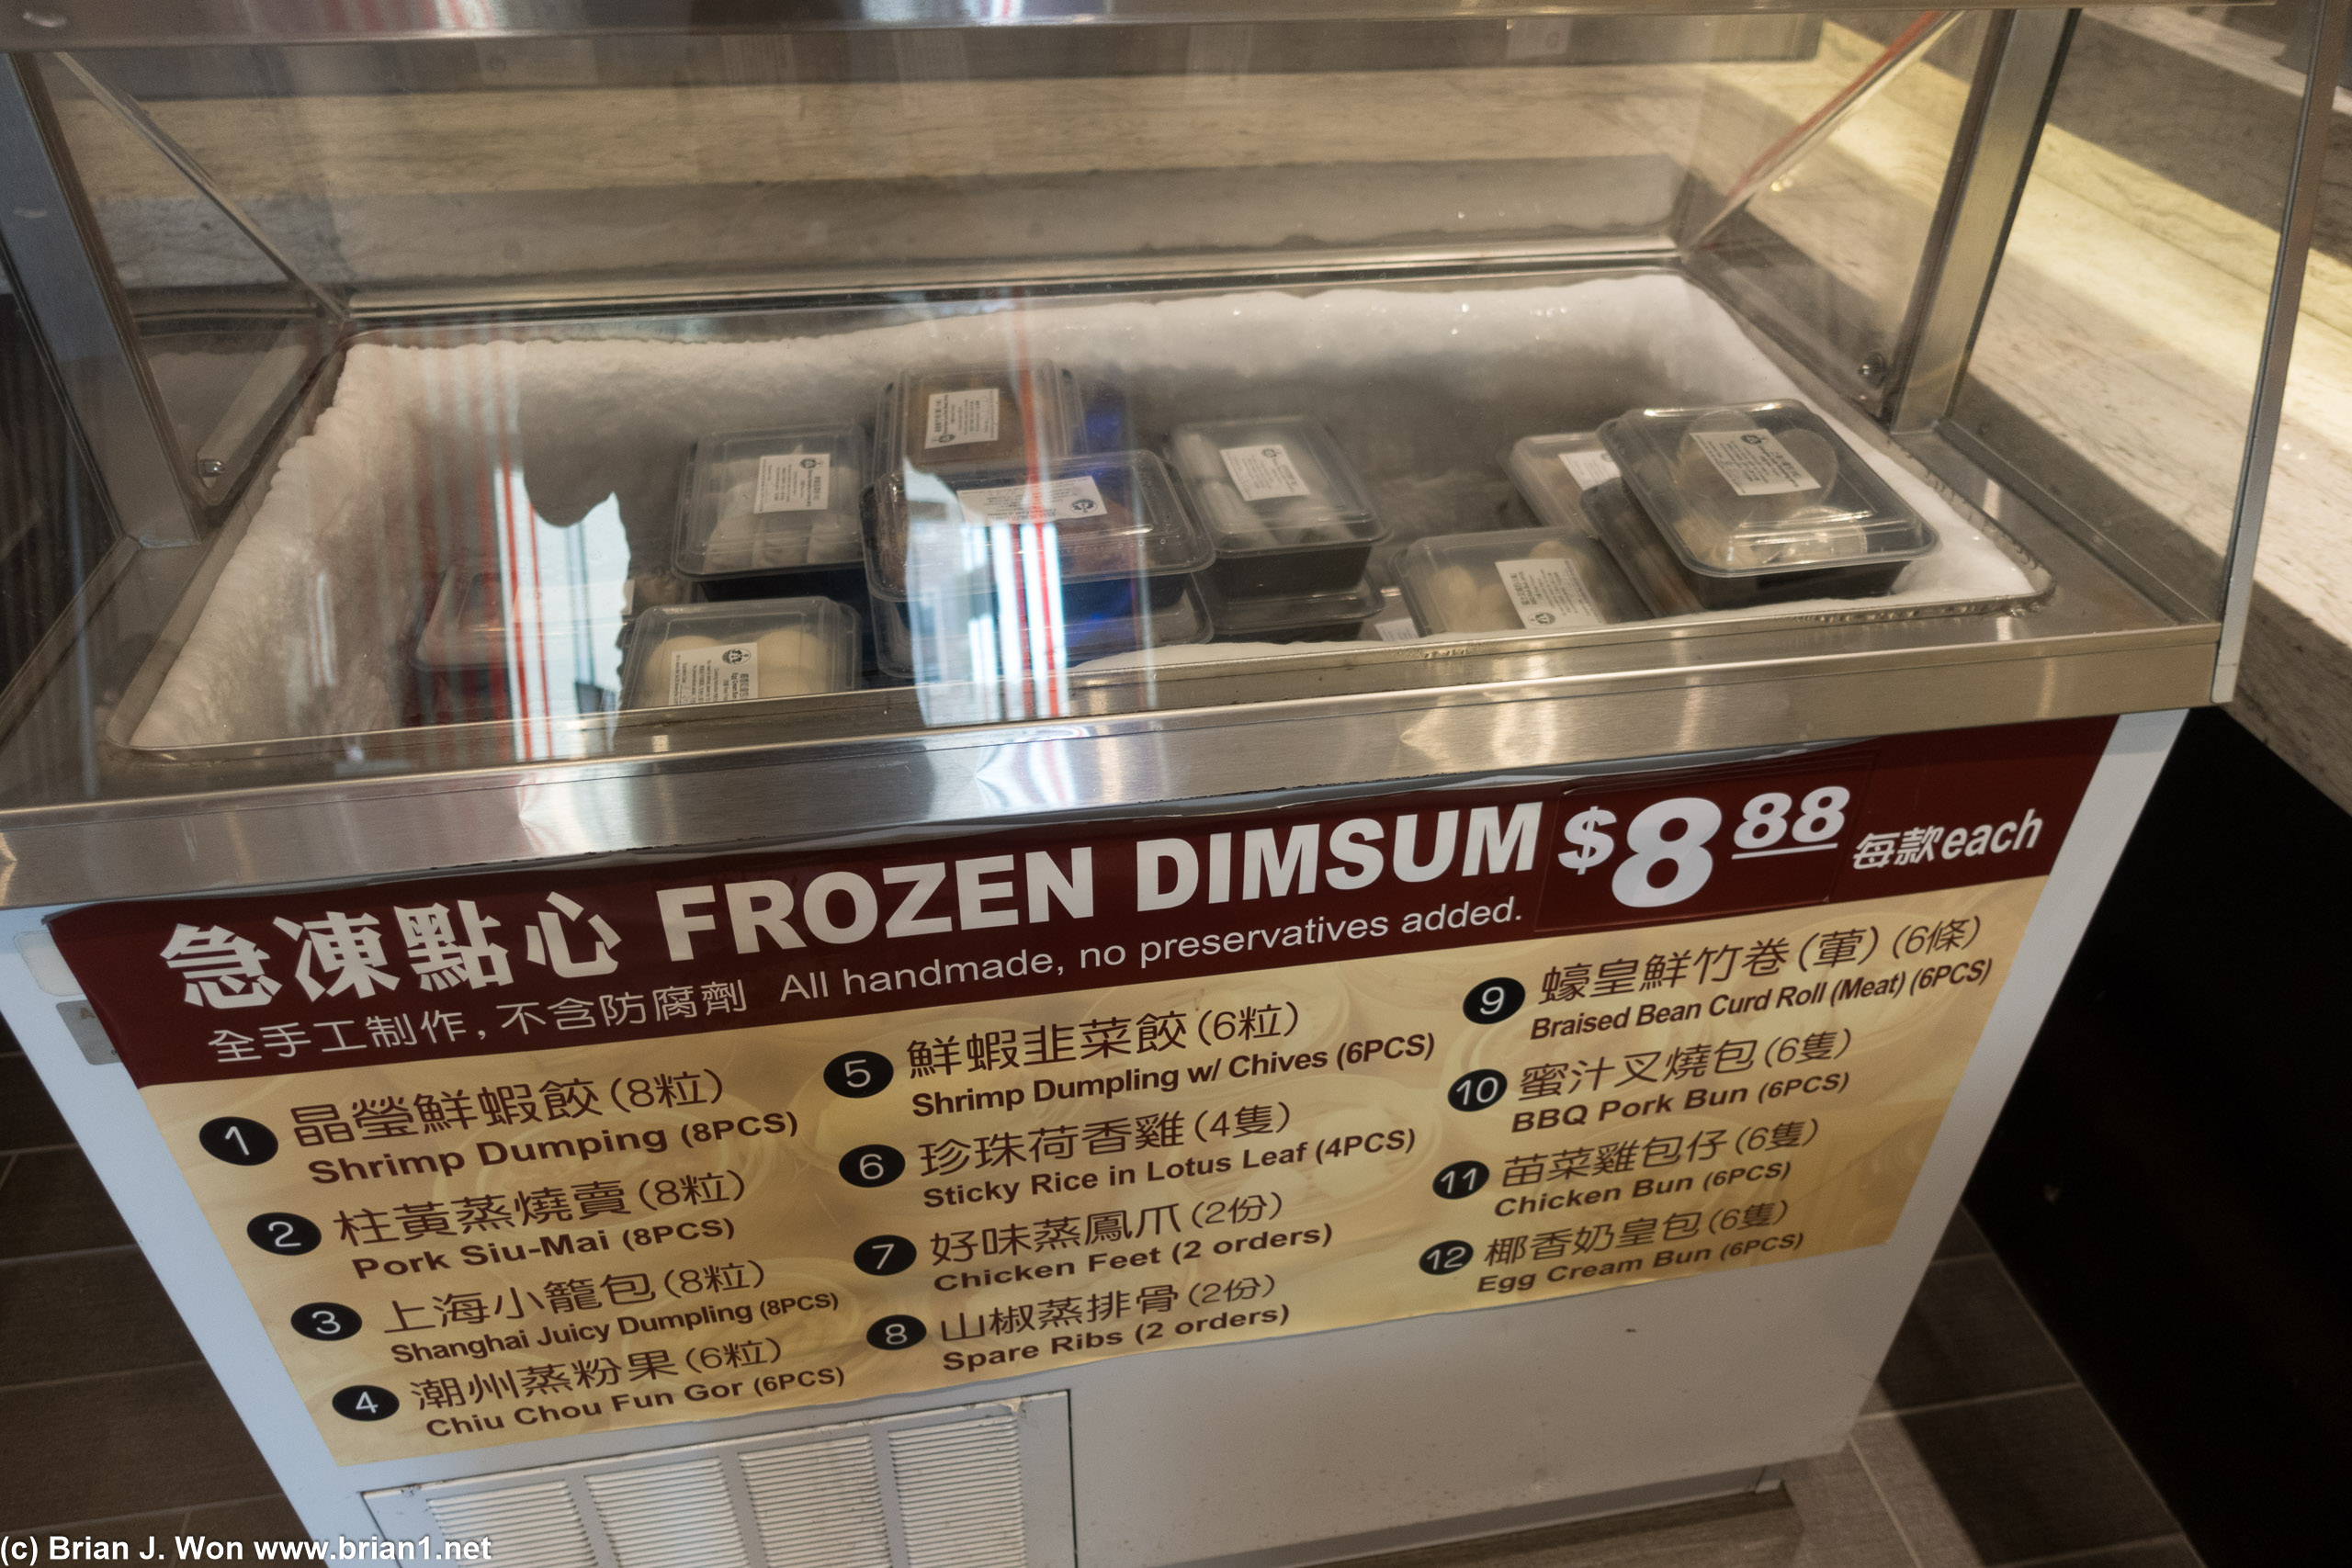 Frozen selection.